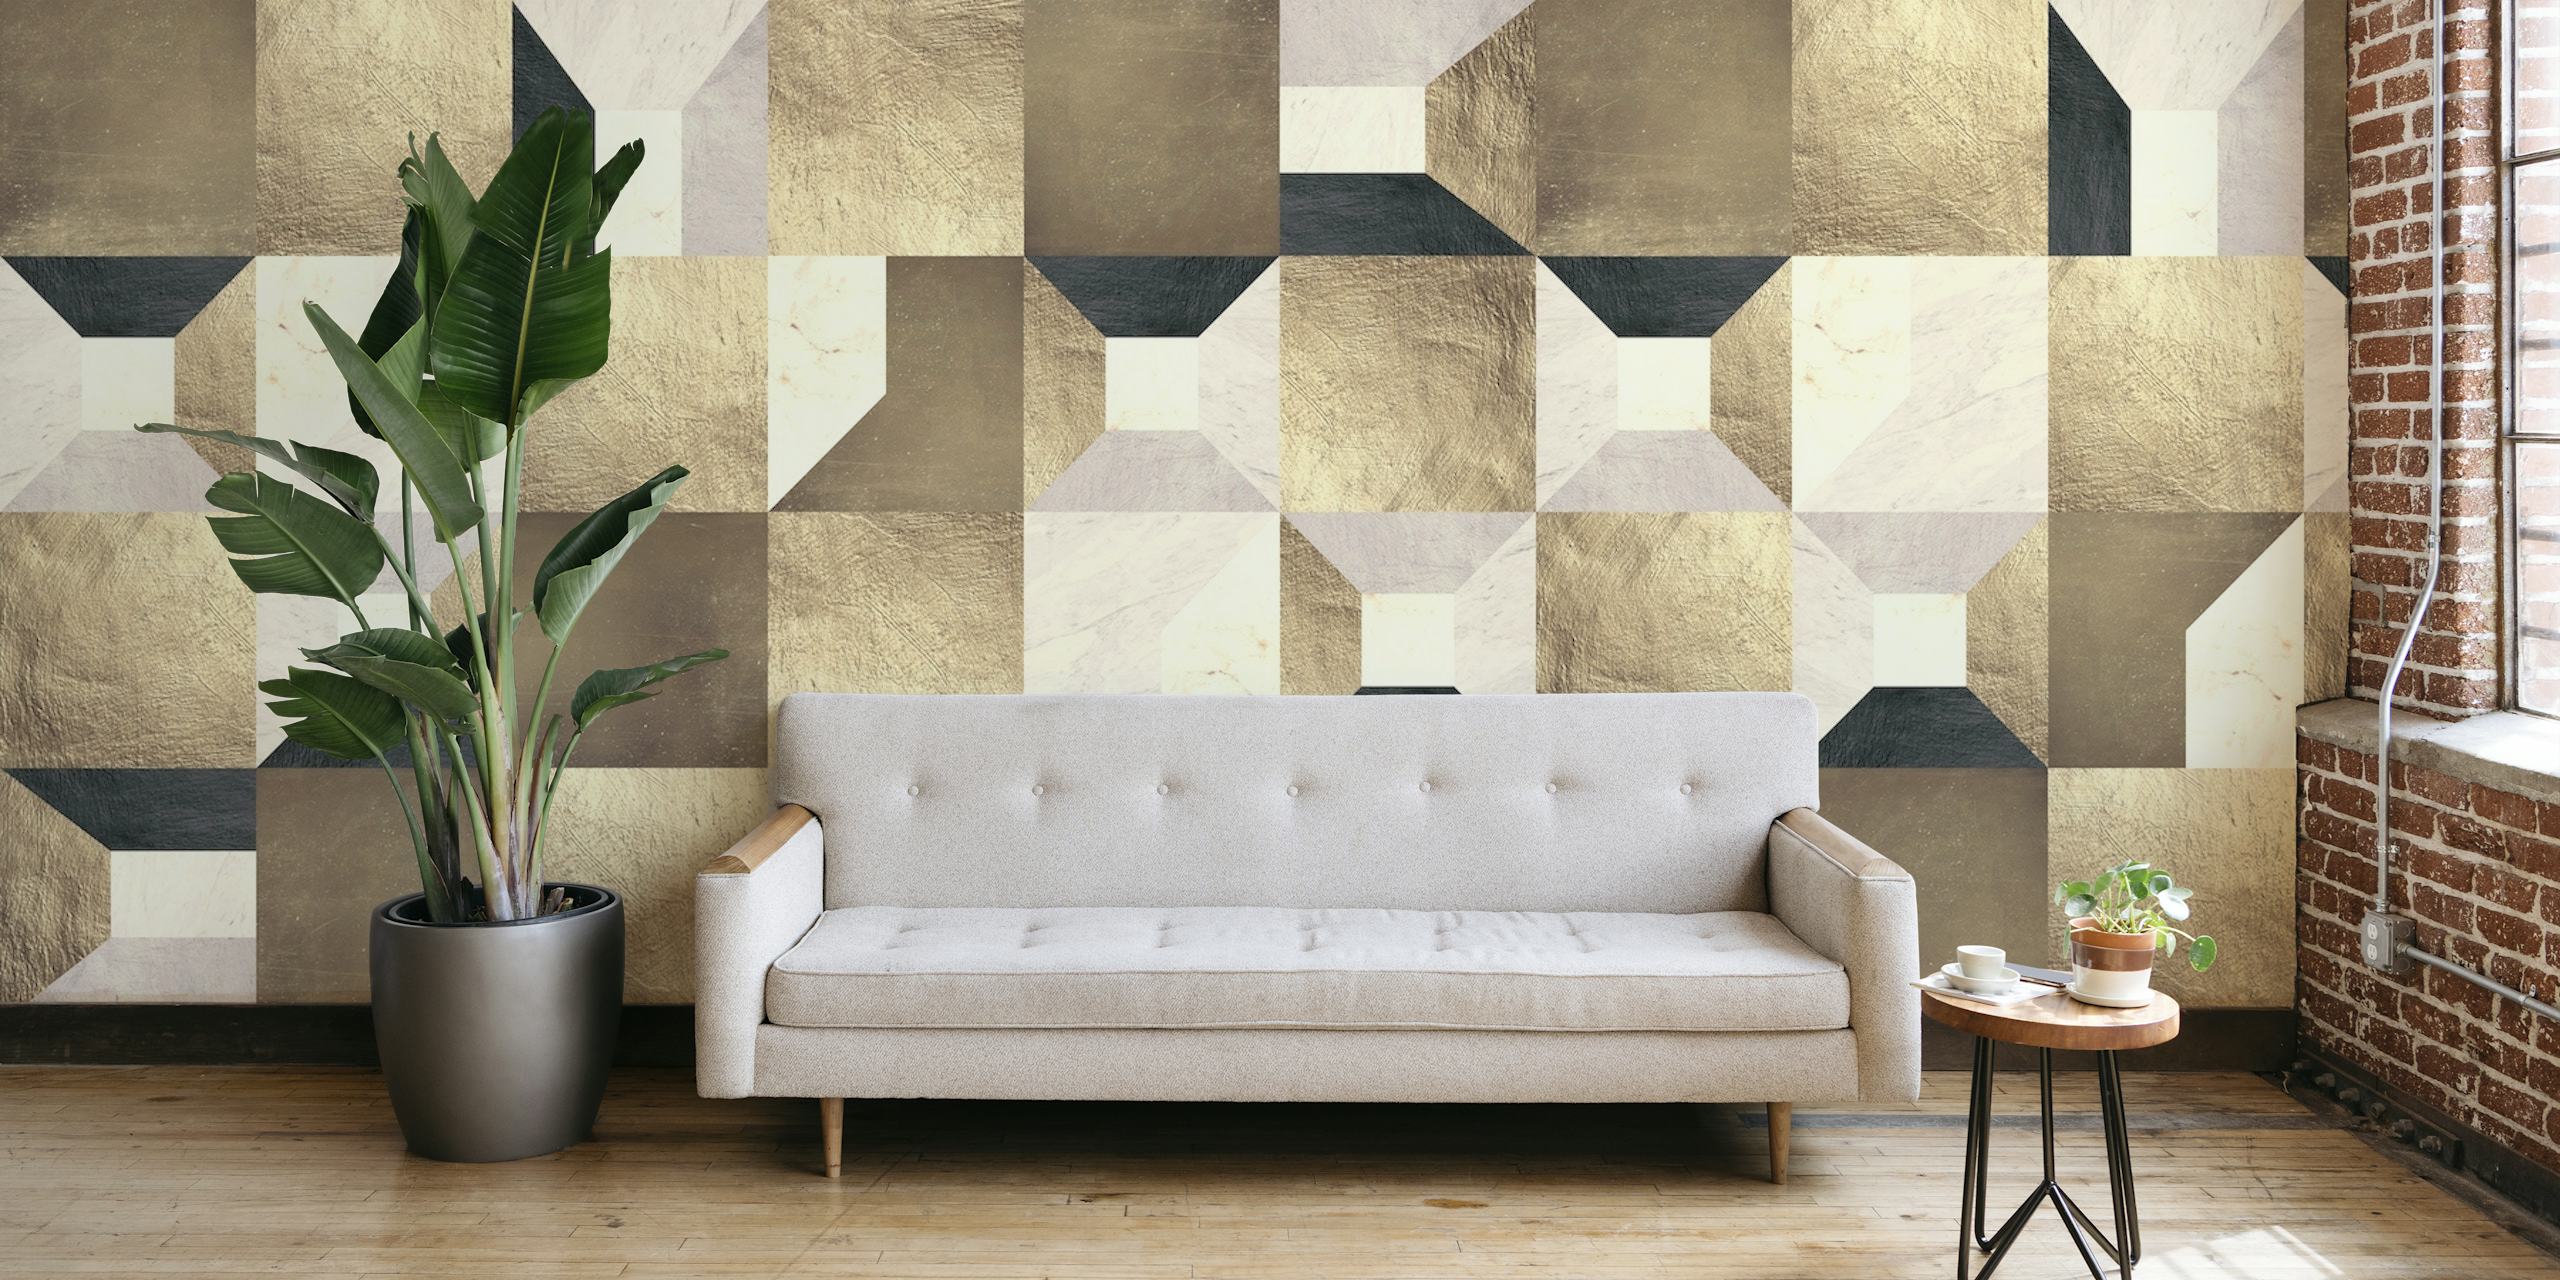 Geometrisk tapet med gyllene rutor med en blandning av beige, grädde och guldnyanser som bildar ett elegant mönster.